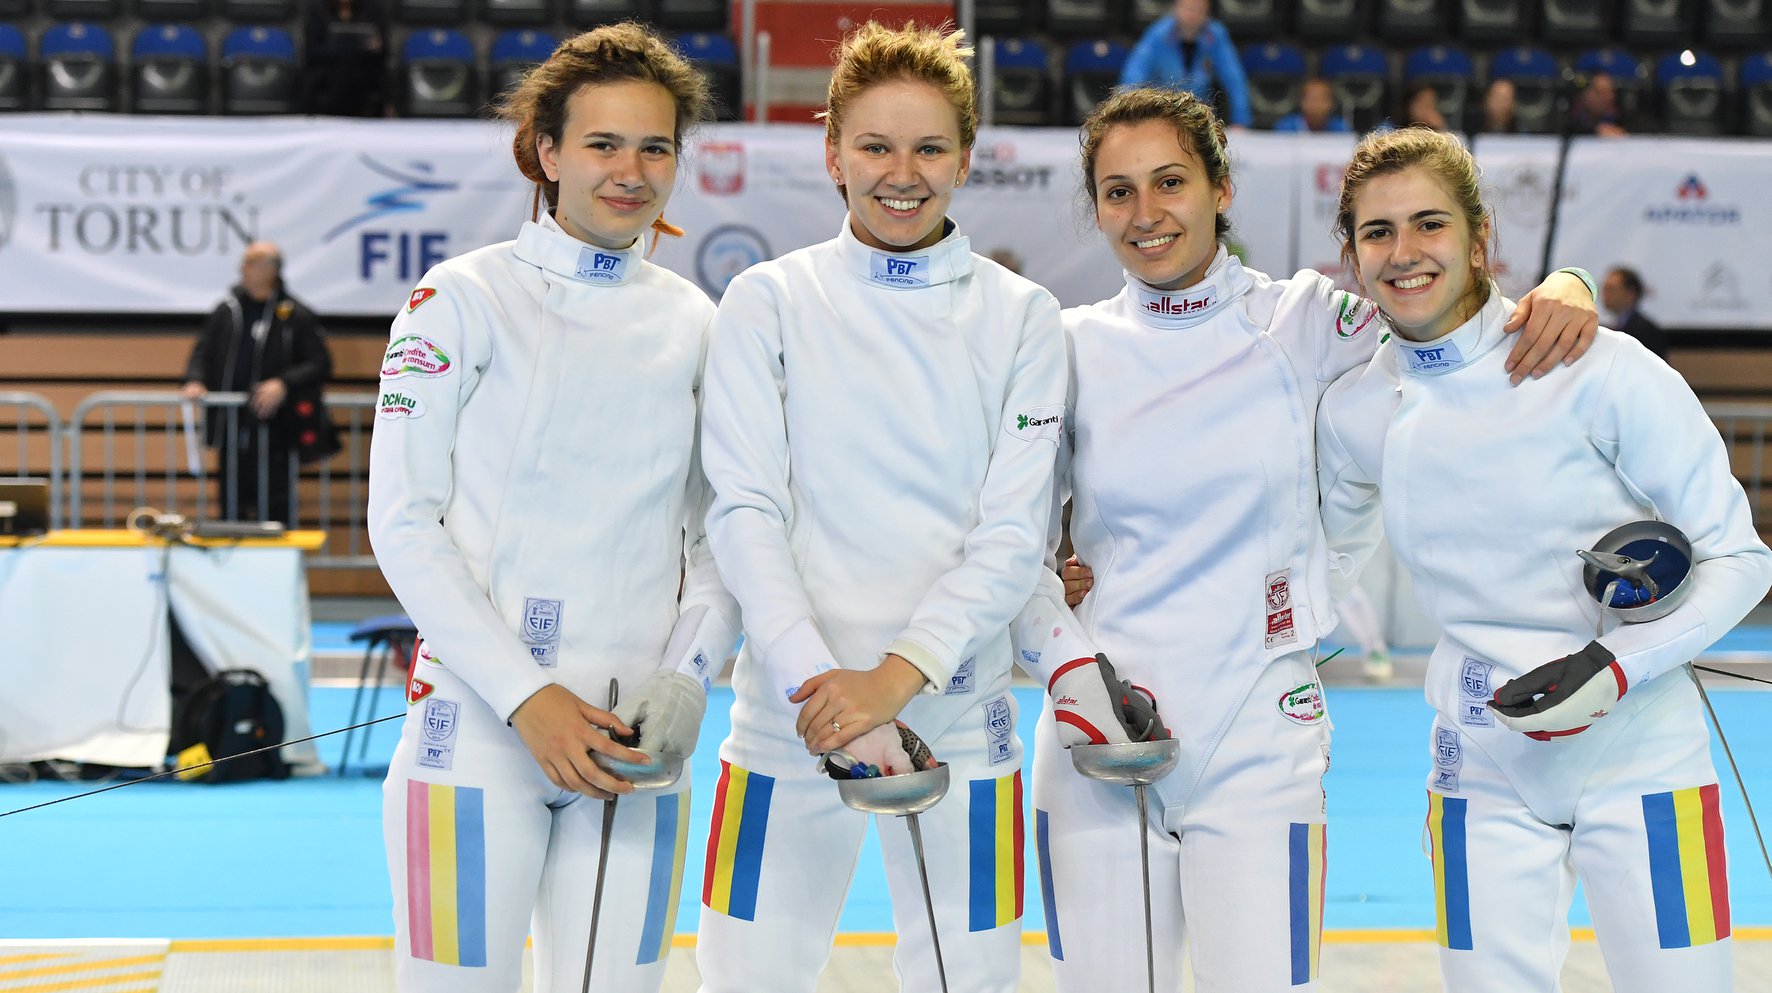 C.M. de cadeți și juniori – Torun 2019 – juniori, spadă feminin, individual